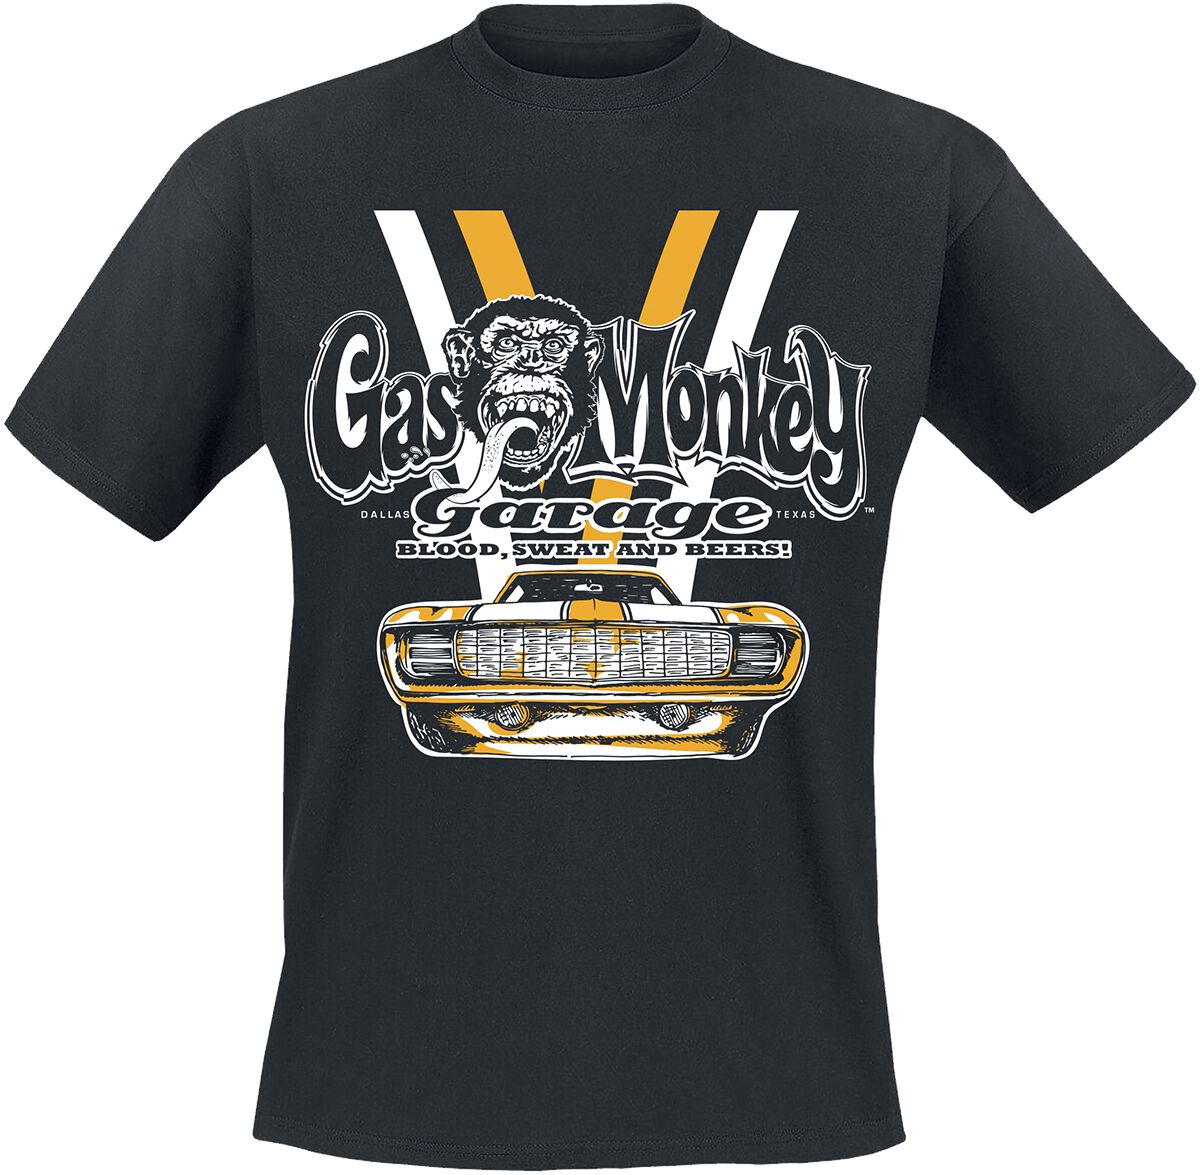 Gas Monkey Garage T-Shirt - Yellow And White Car - S bis XXL - für Männer - Größe L - schwarz  - Lizenzierter Fanartikel